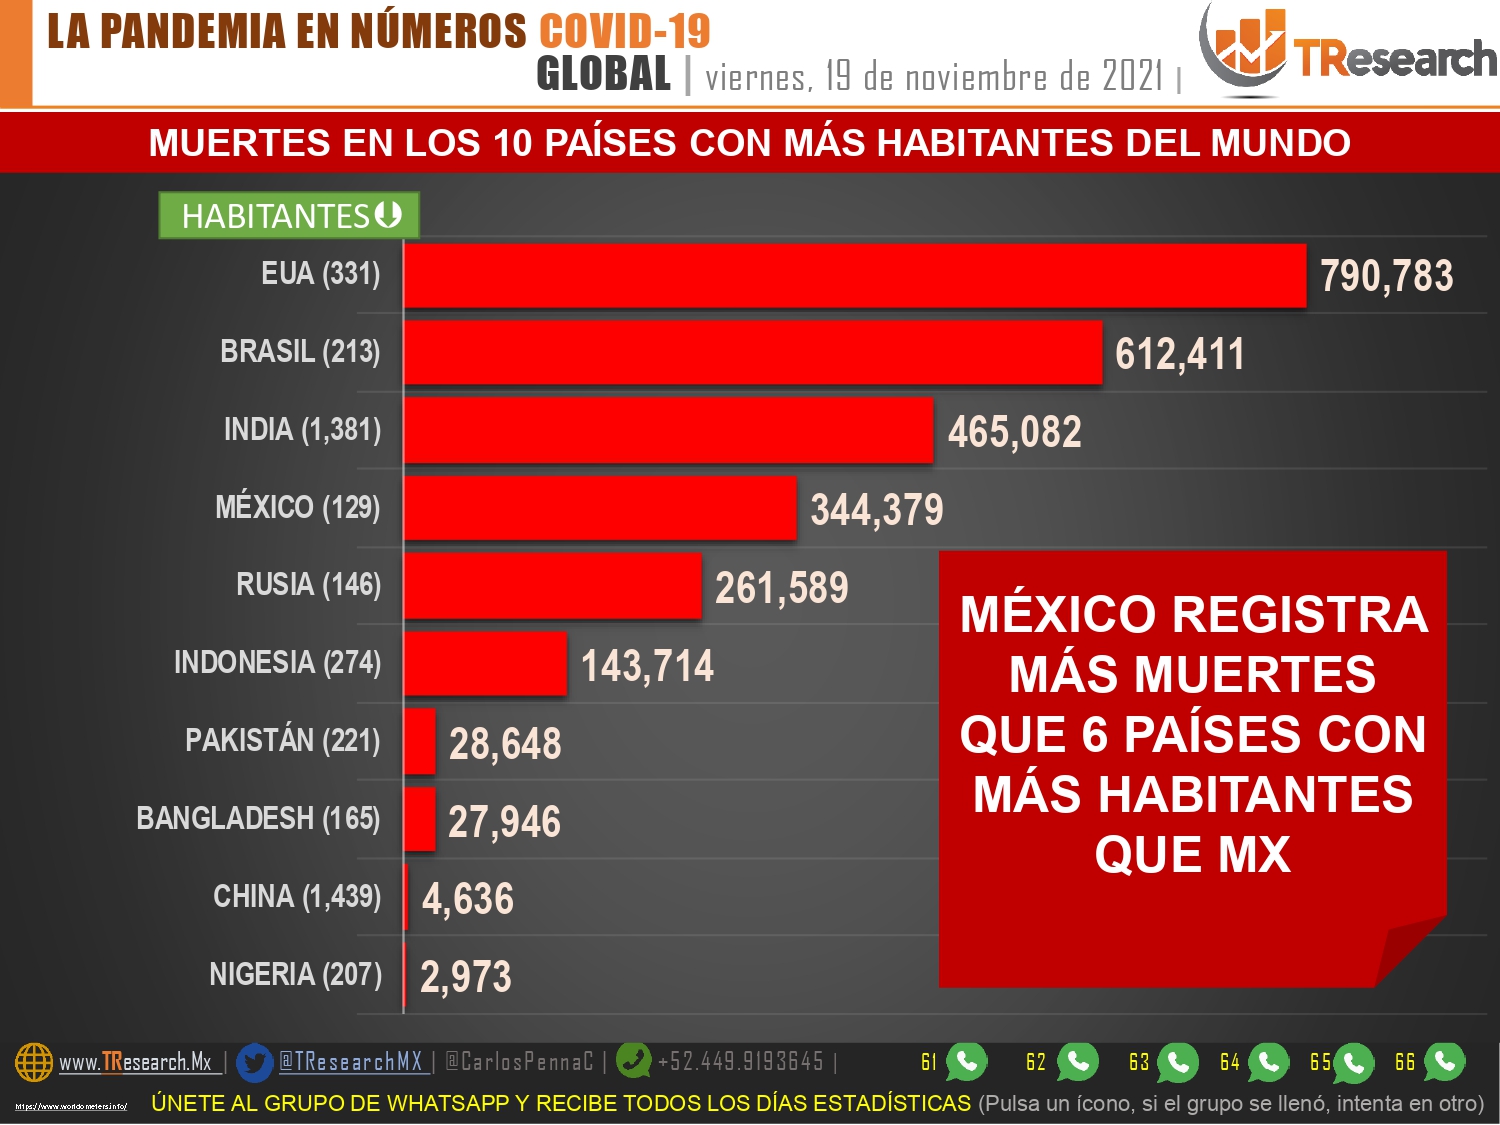 Aunque es el 4to país del mundo con más muertos por Covid19, México se mantiene como el que menos pruebas Covid19 hace en el continente americano